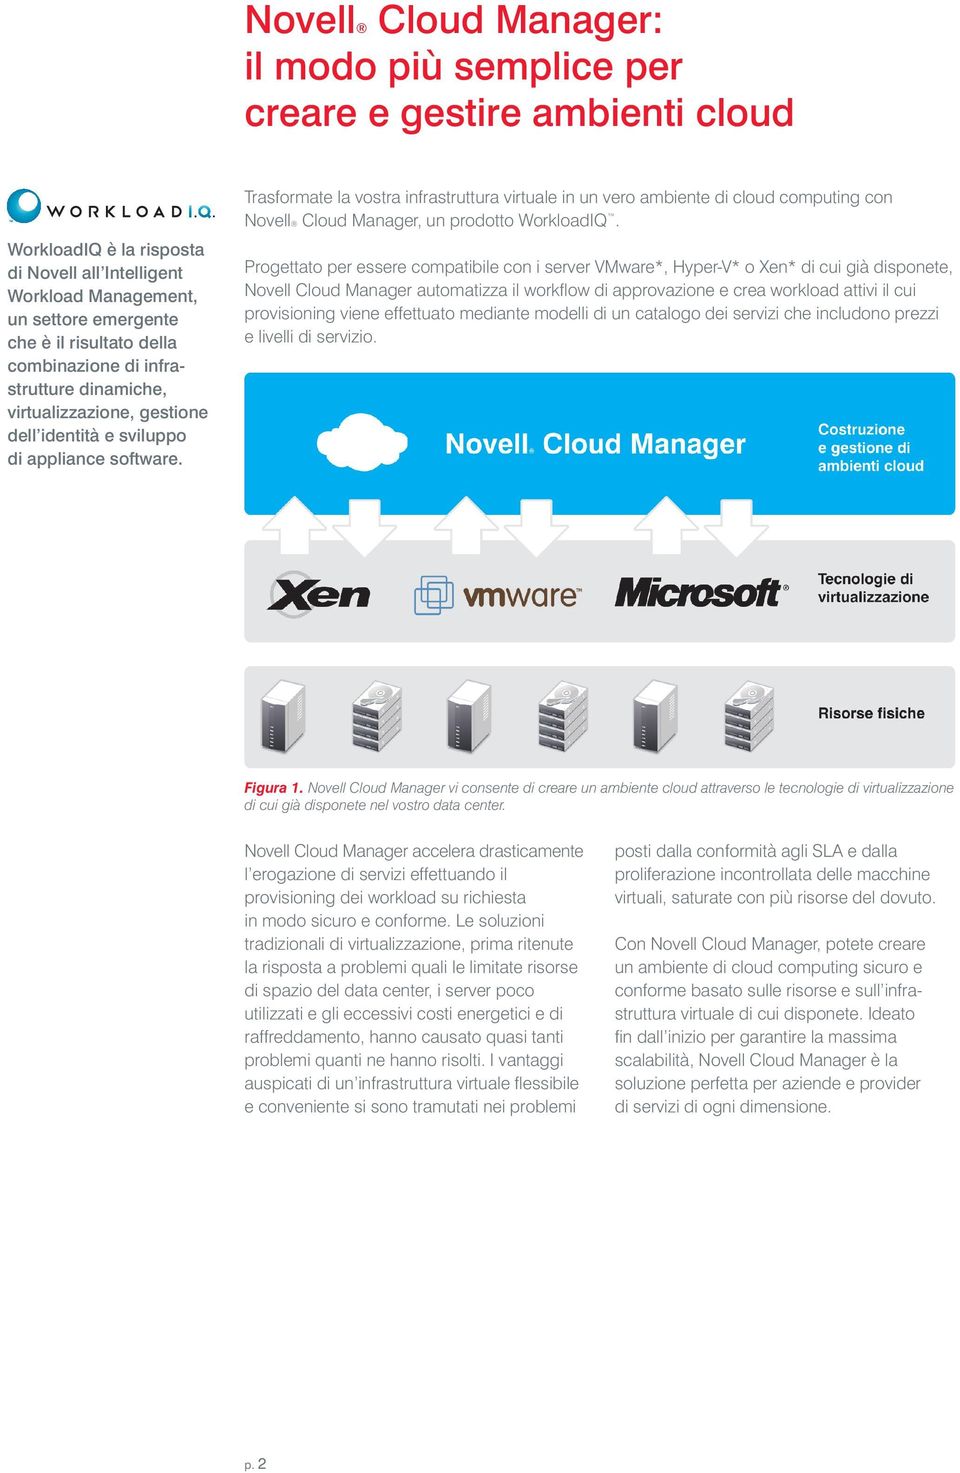 Trasformate la vostra infrastruttura virtuale in un vero ambiente di cloud computing con Novell Cloud Manager, un prodotto WorkloadIQ.